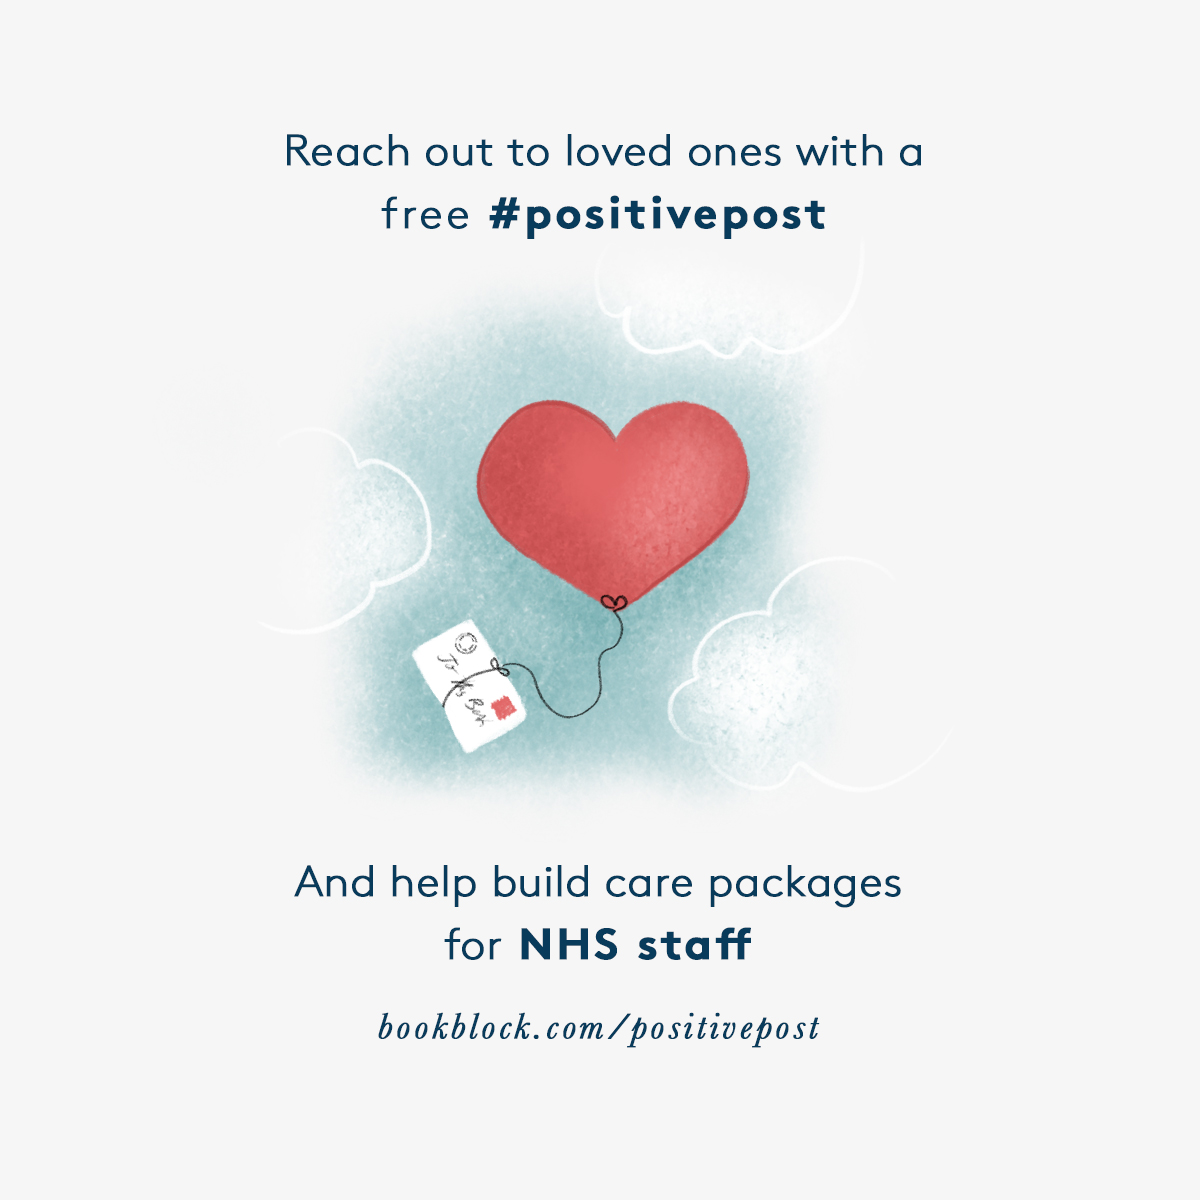 NHS Positive Post-Bookblock Campaign - COVID-19 Urgent Appeal